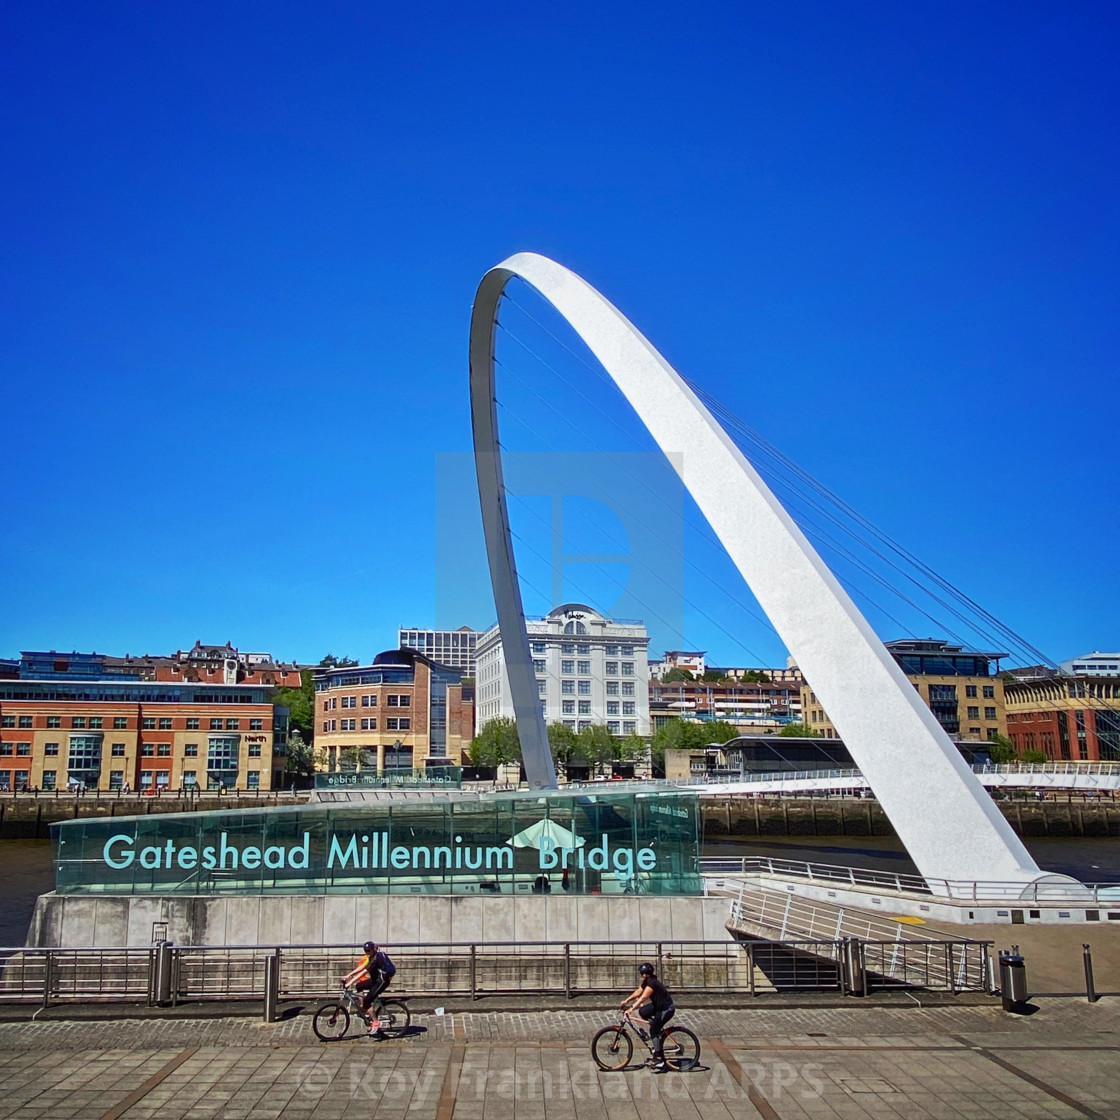 "Gateshead Millennium bridge" stock image